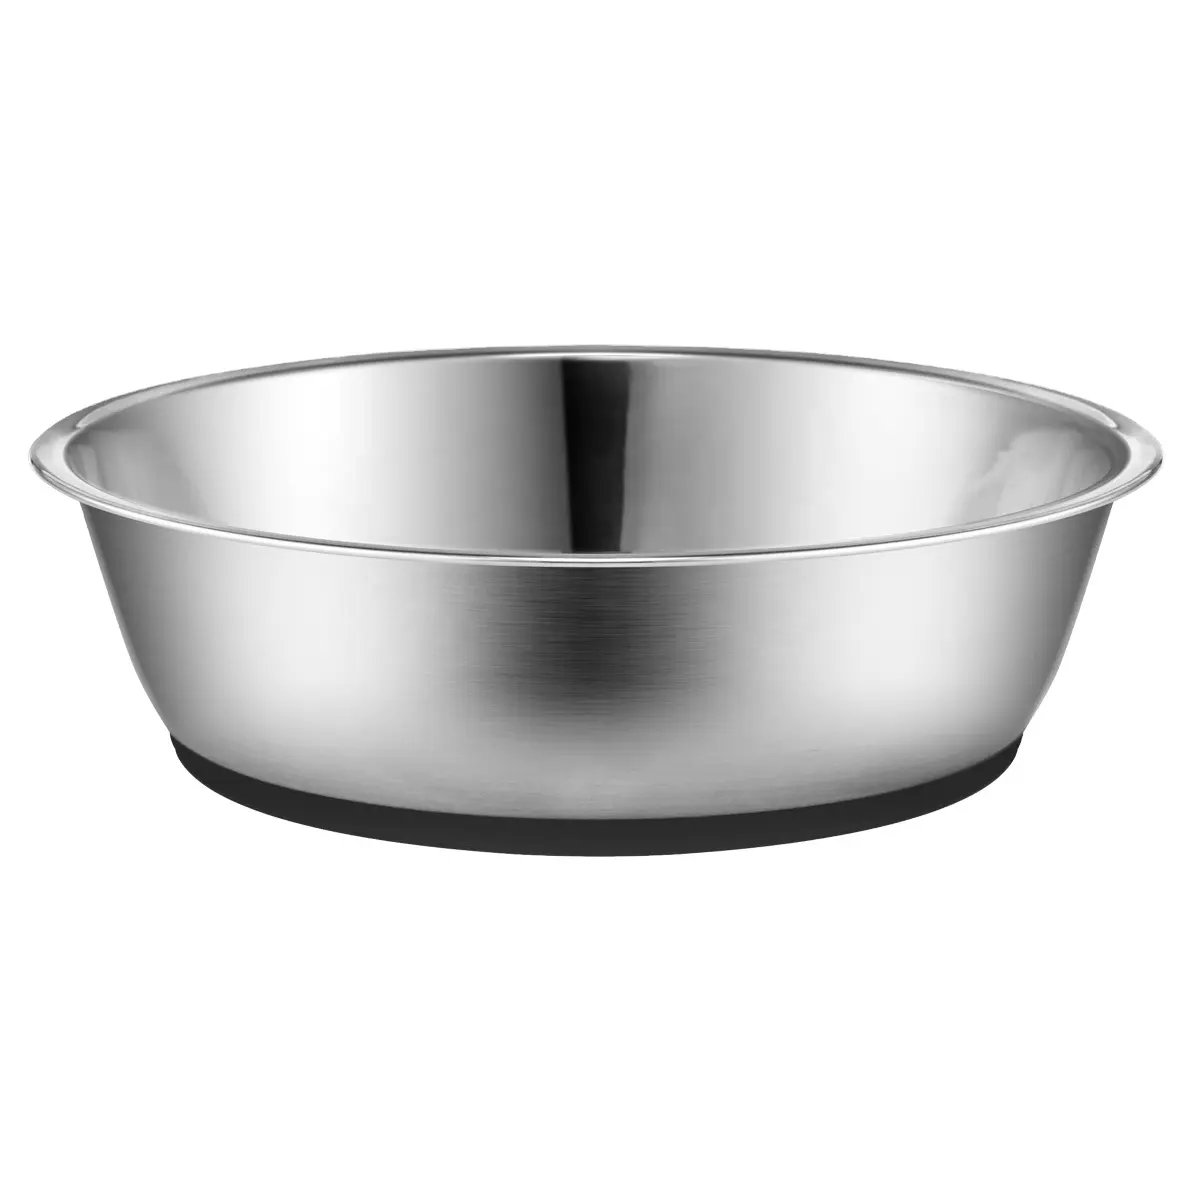 Mangkuk anjing Stainless Steel Non Slip, mangkuk minum makanan hewan peliharaan dengan dasar karet baja tahan karat